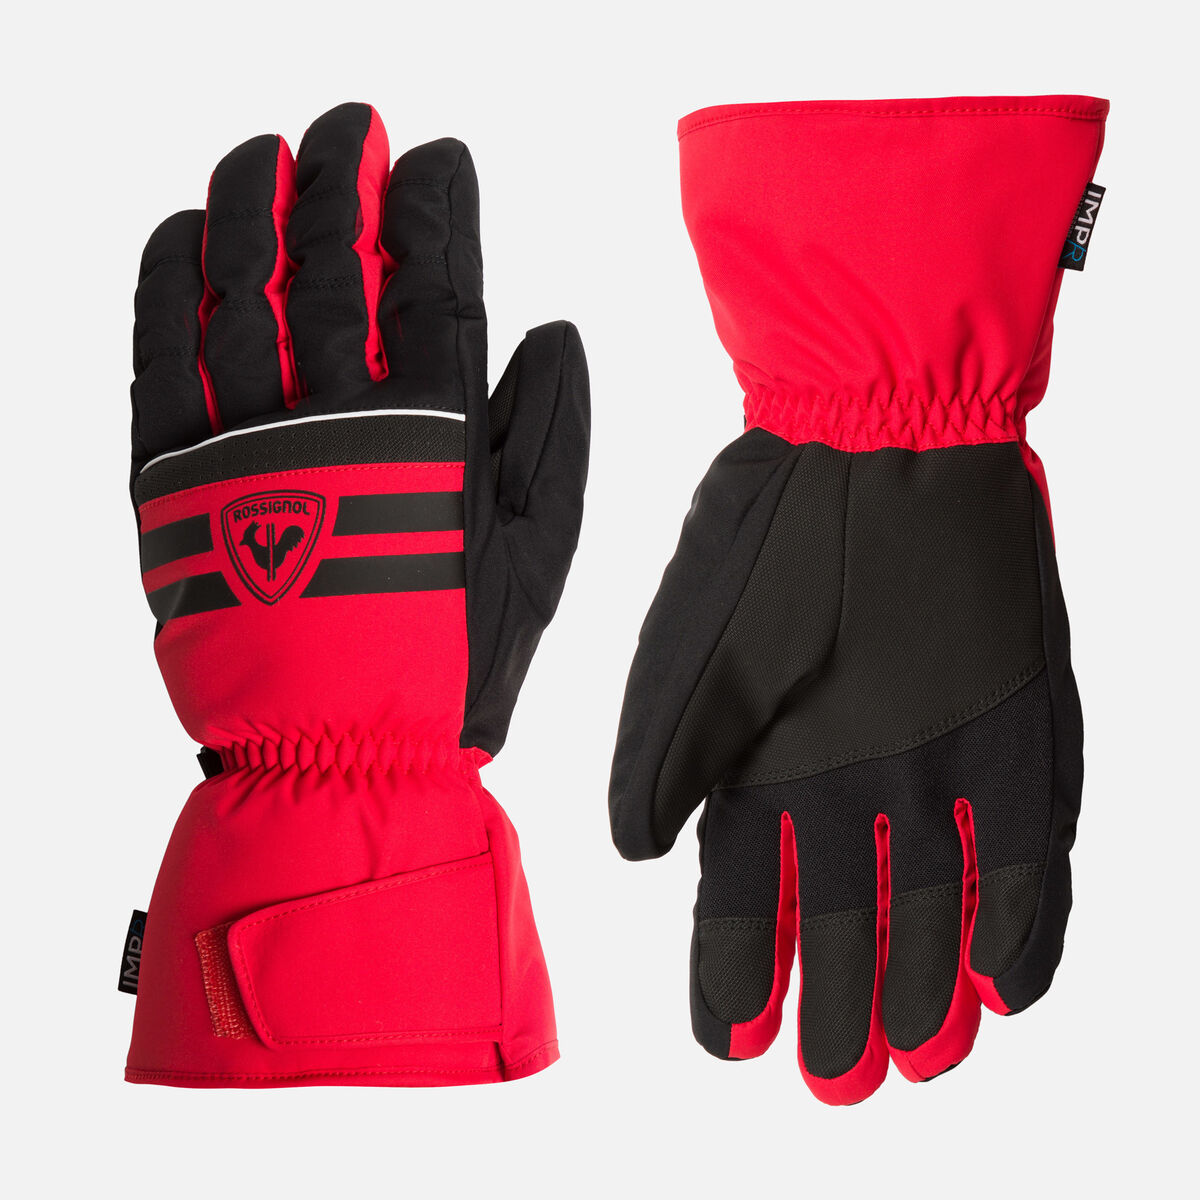 Men's Tech Waterproof Ski Gloves